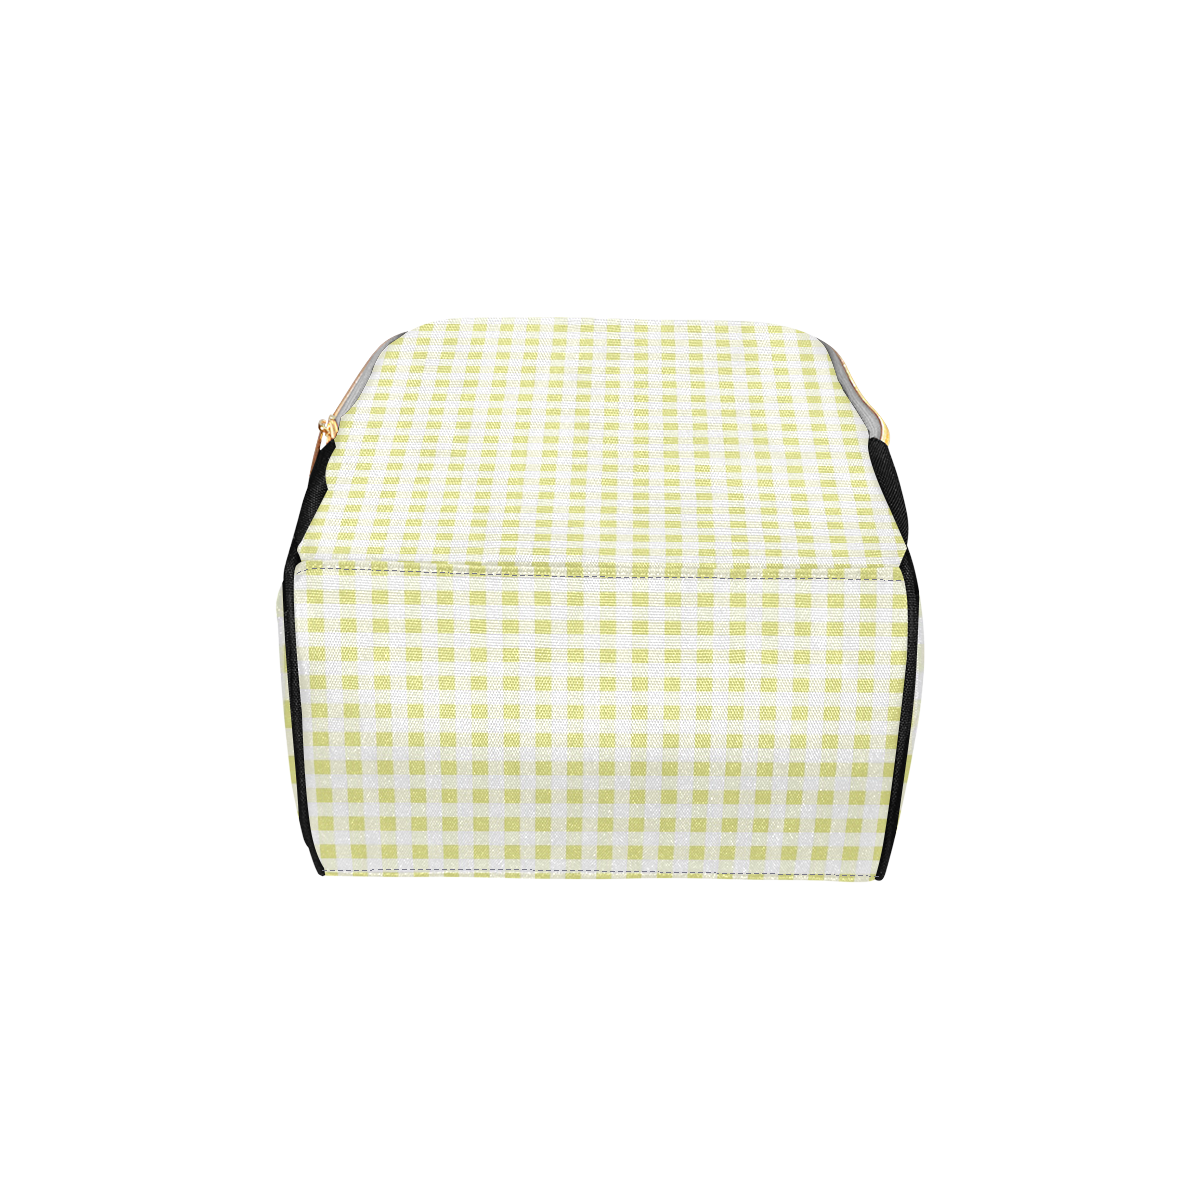 Pale Yellow Gingham Multi-Function Diaper Backpack/Diaper Bag (Model 1688)